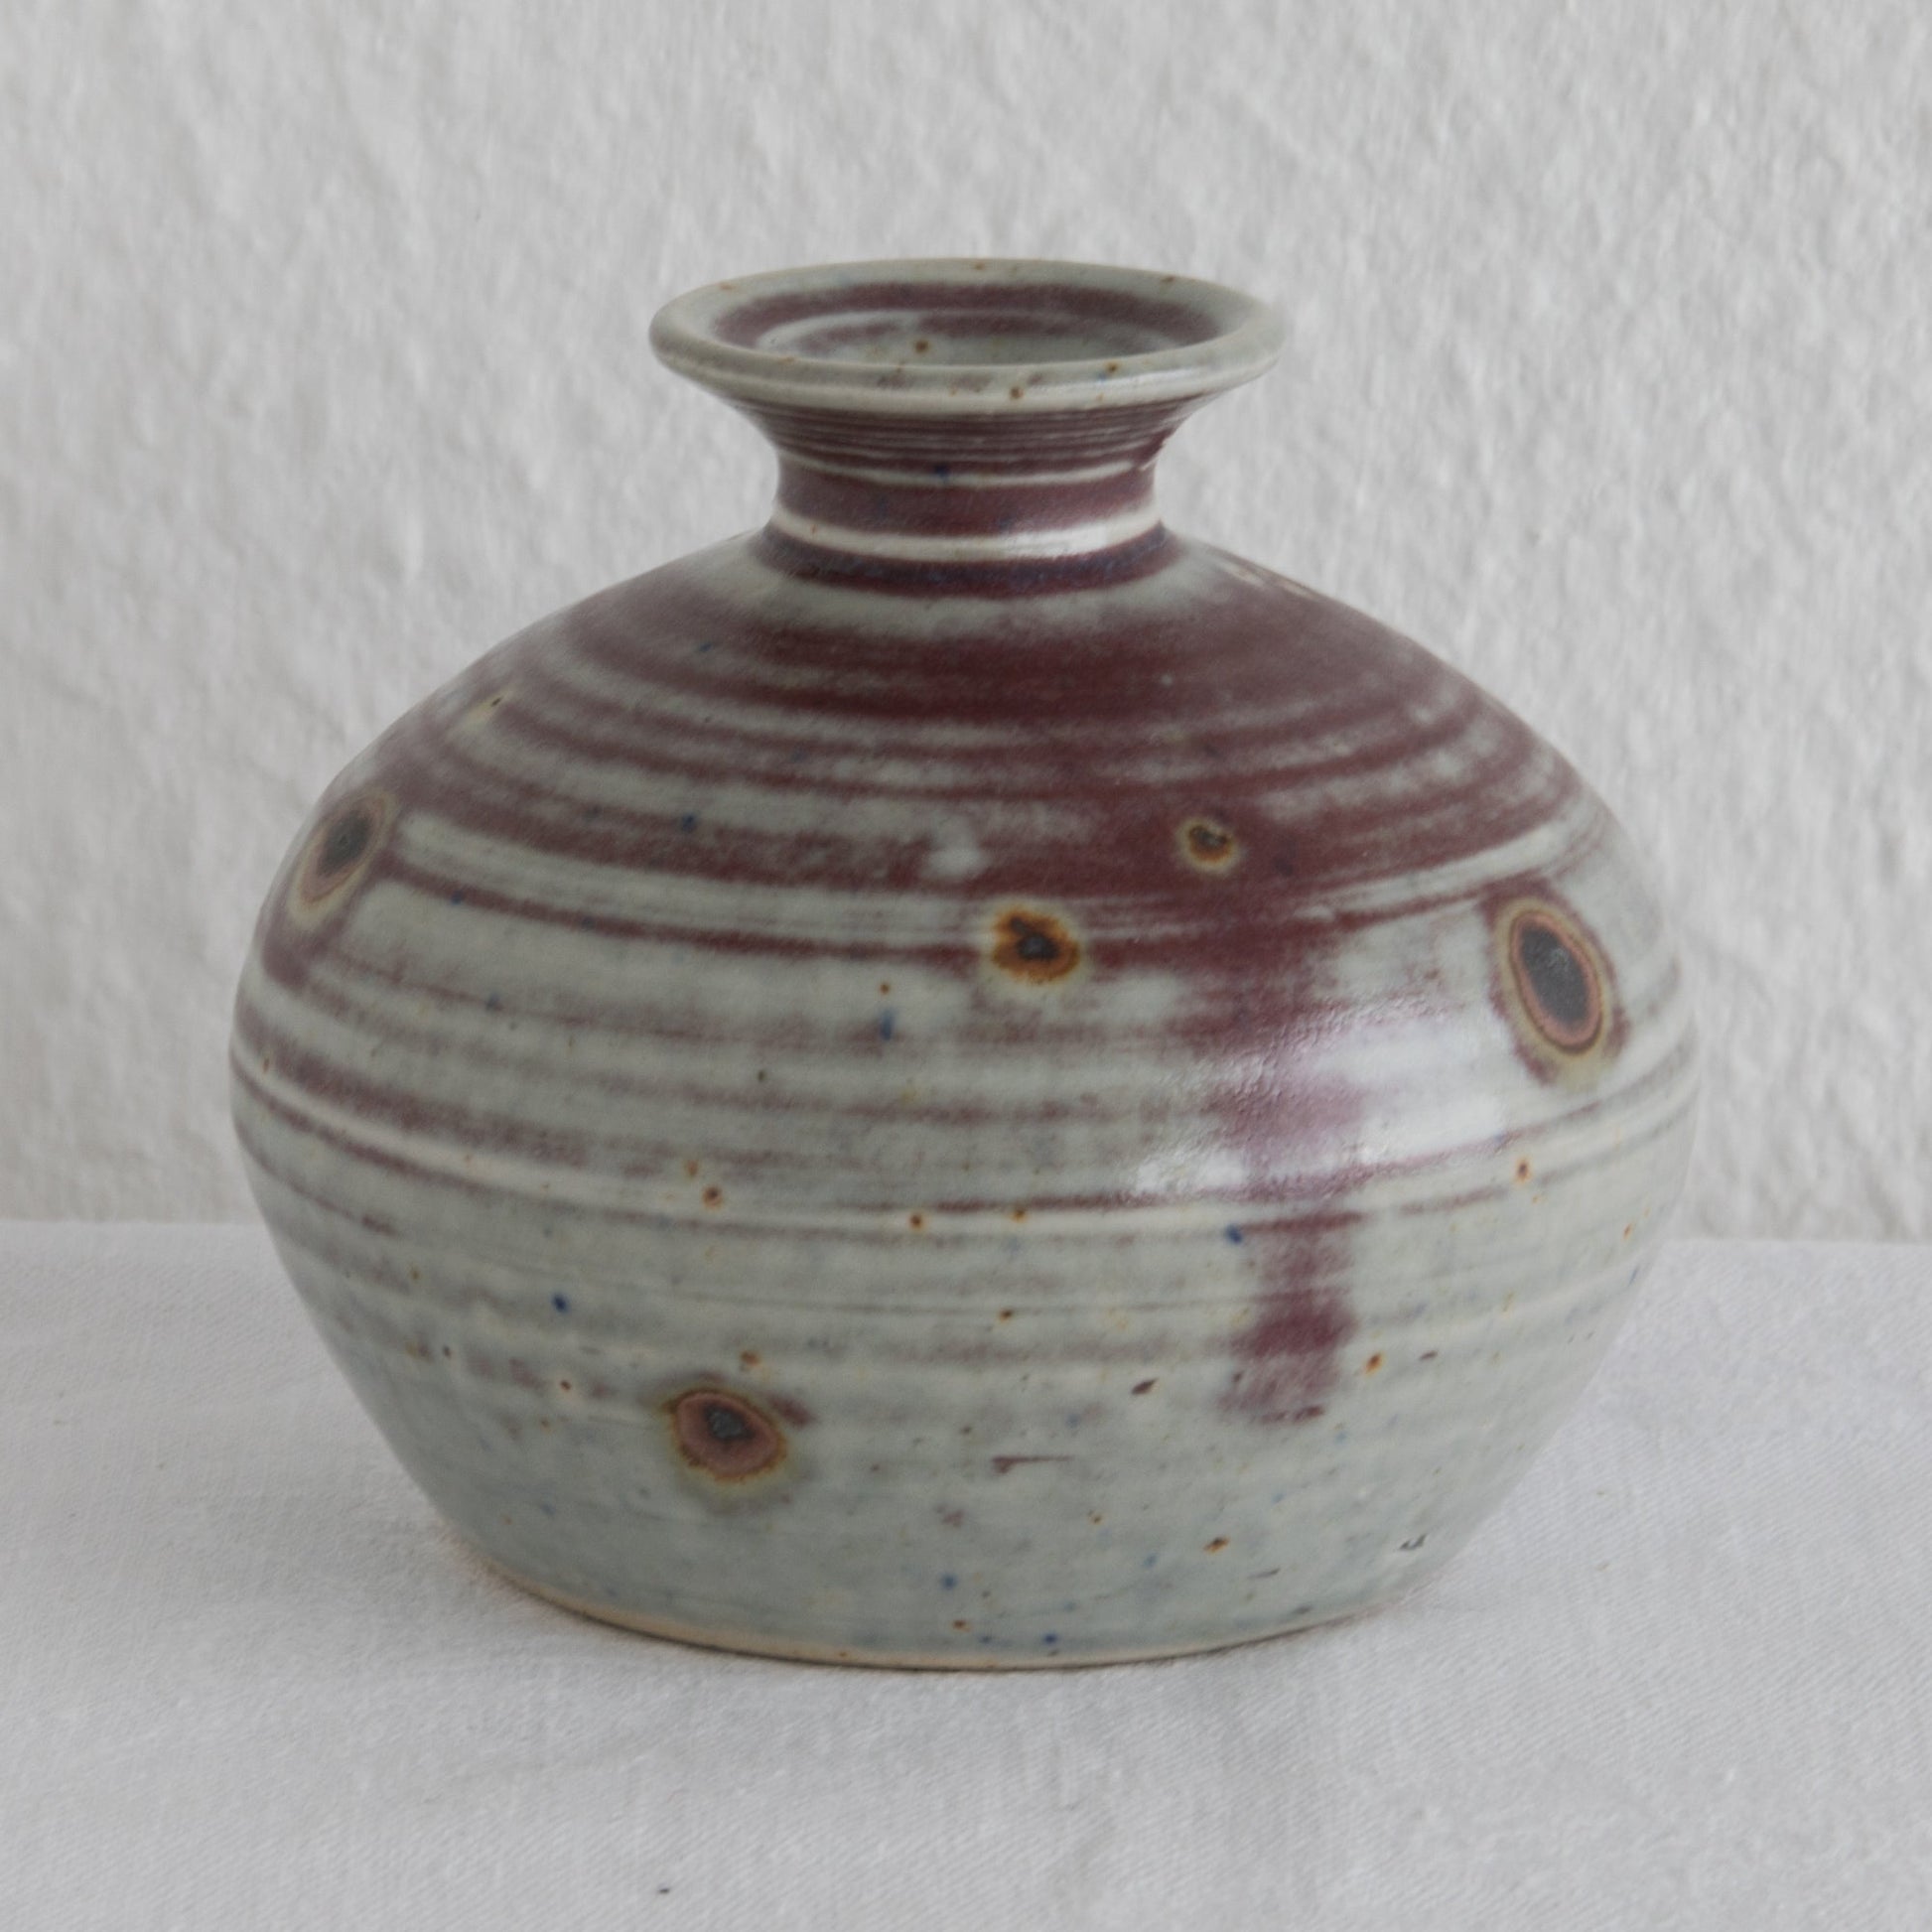 GERDA ØSTERGAARD Small Beige Red Glazed Stoneware Vase Mollaris.com 